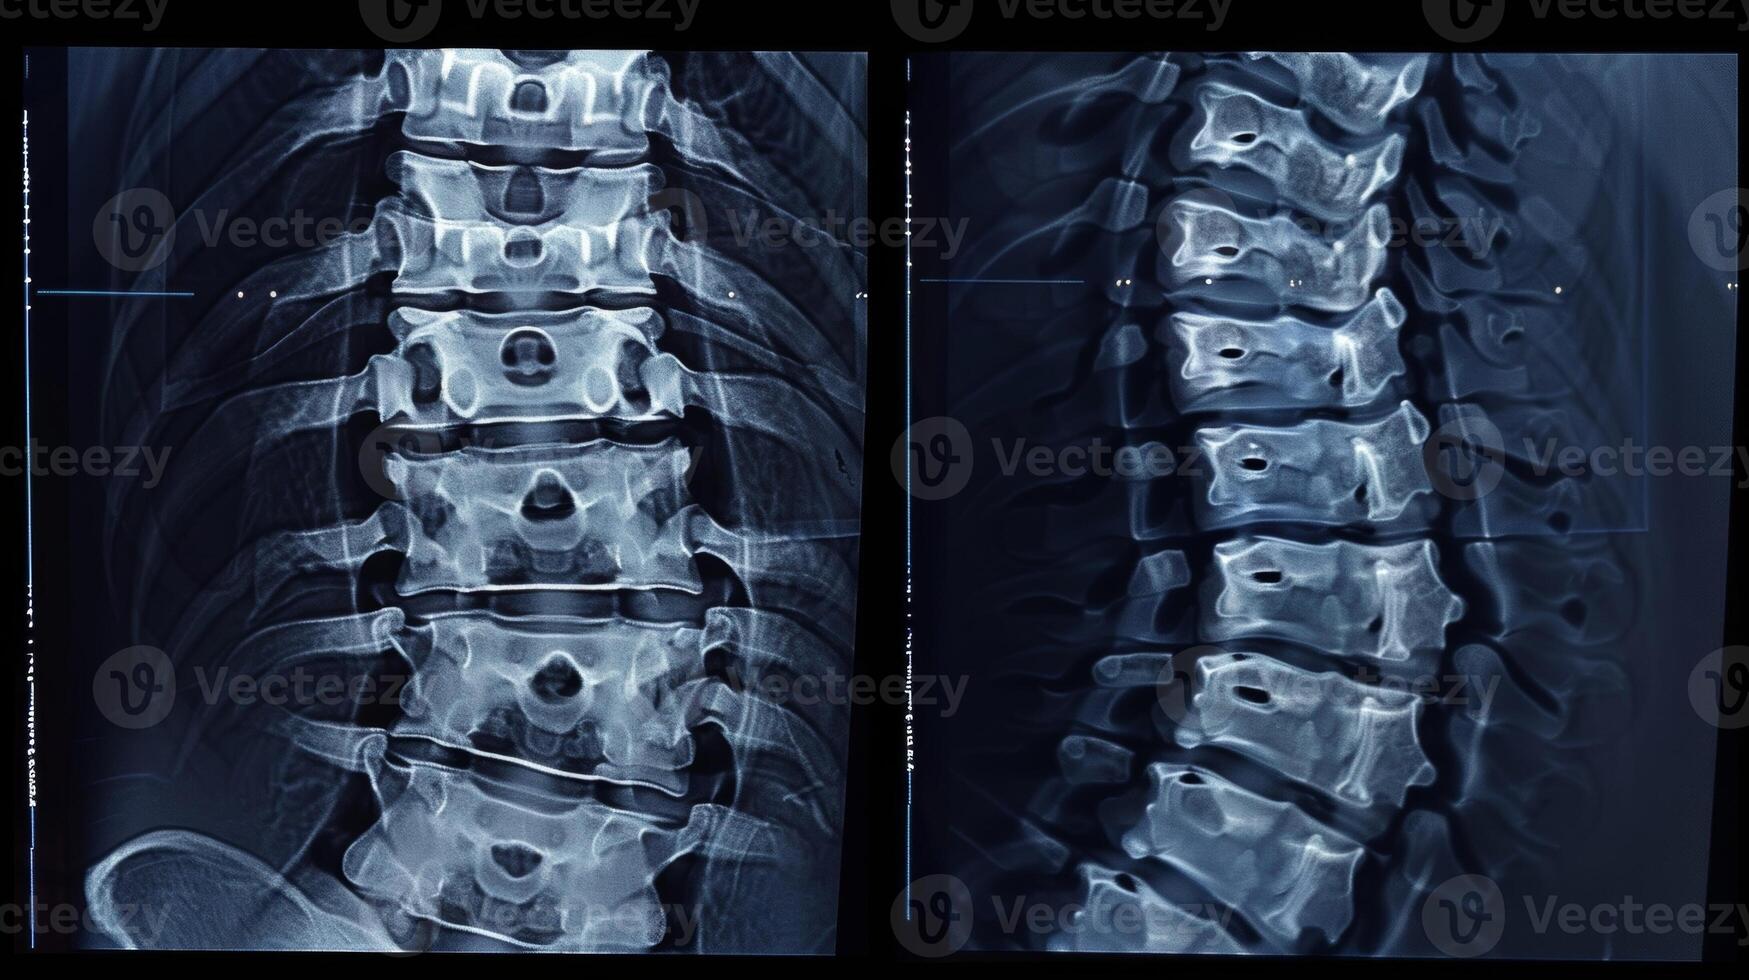 een voordat en na vergelijking foto van een patiënten spinal röntgenstralen markeren de verbetering en uitlijning na incorporeren beide chiropractie zorg en infrarood sauna sessies in hun